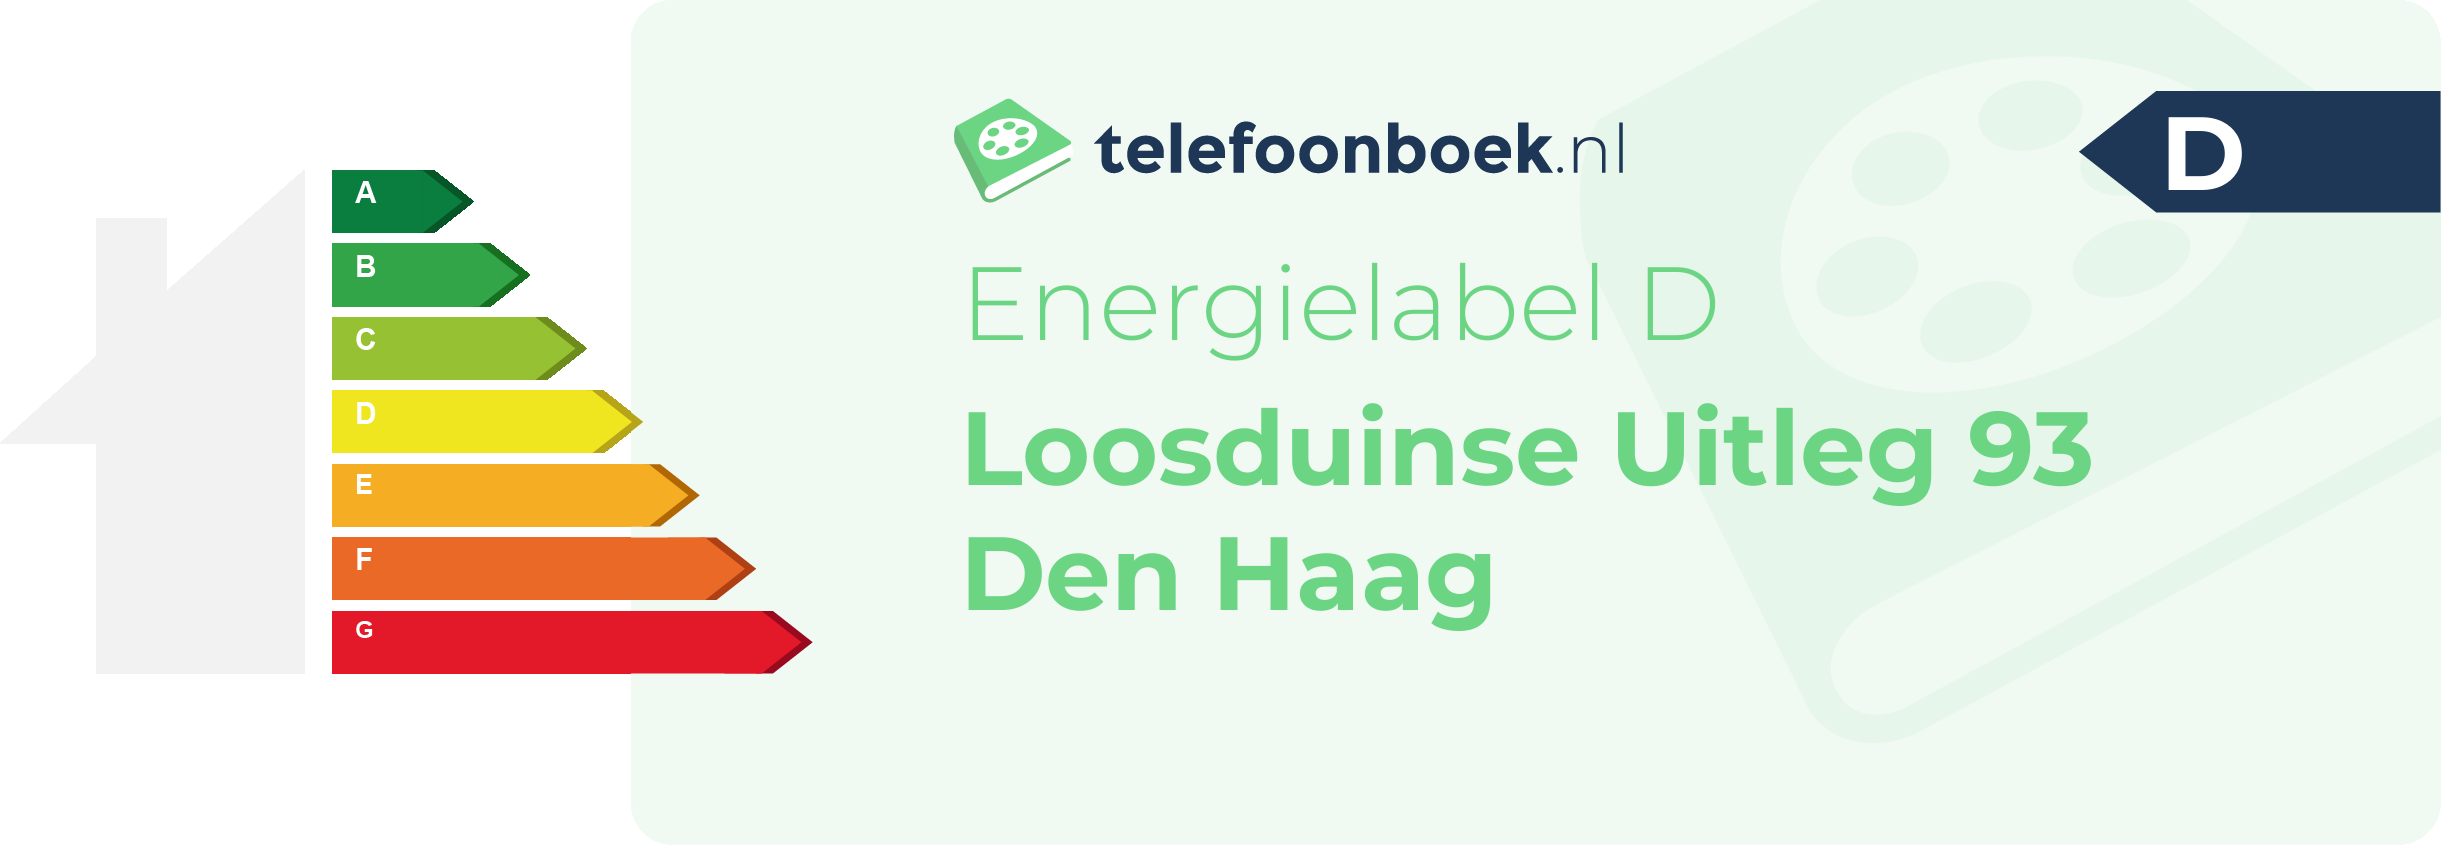 Energielabel Loosduinse Uitleg 93 Den Haag